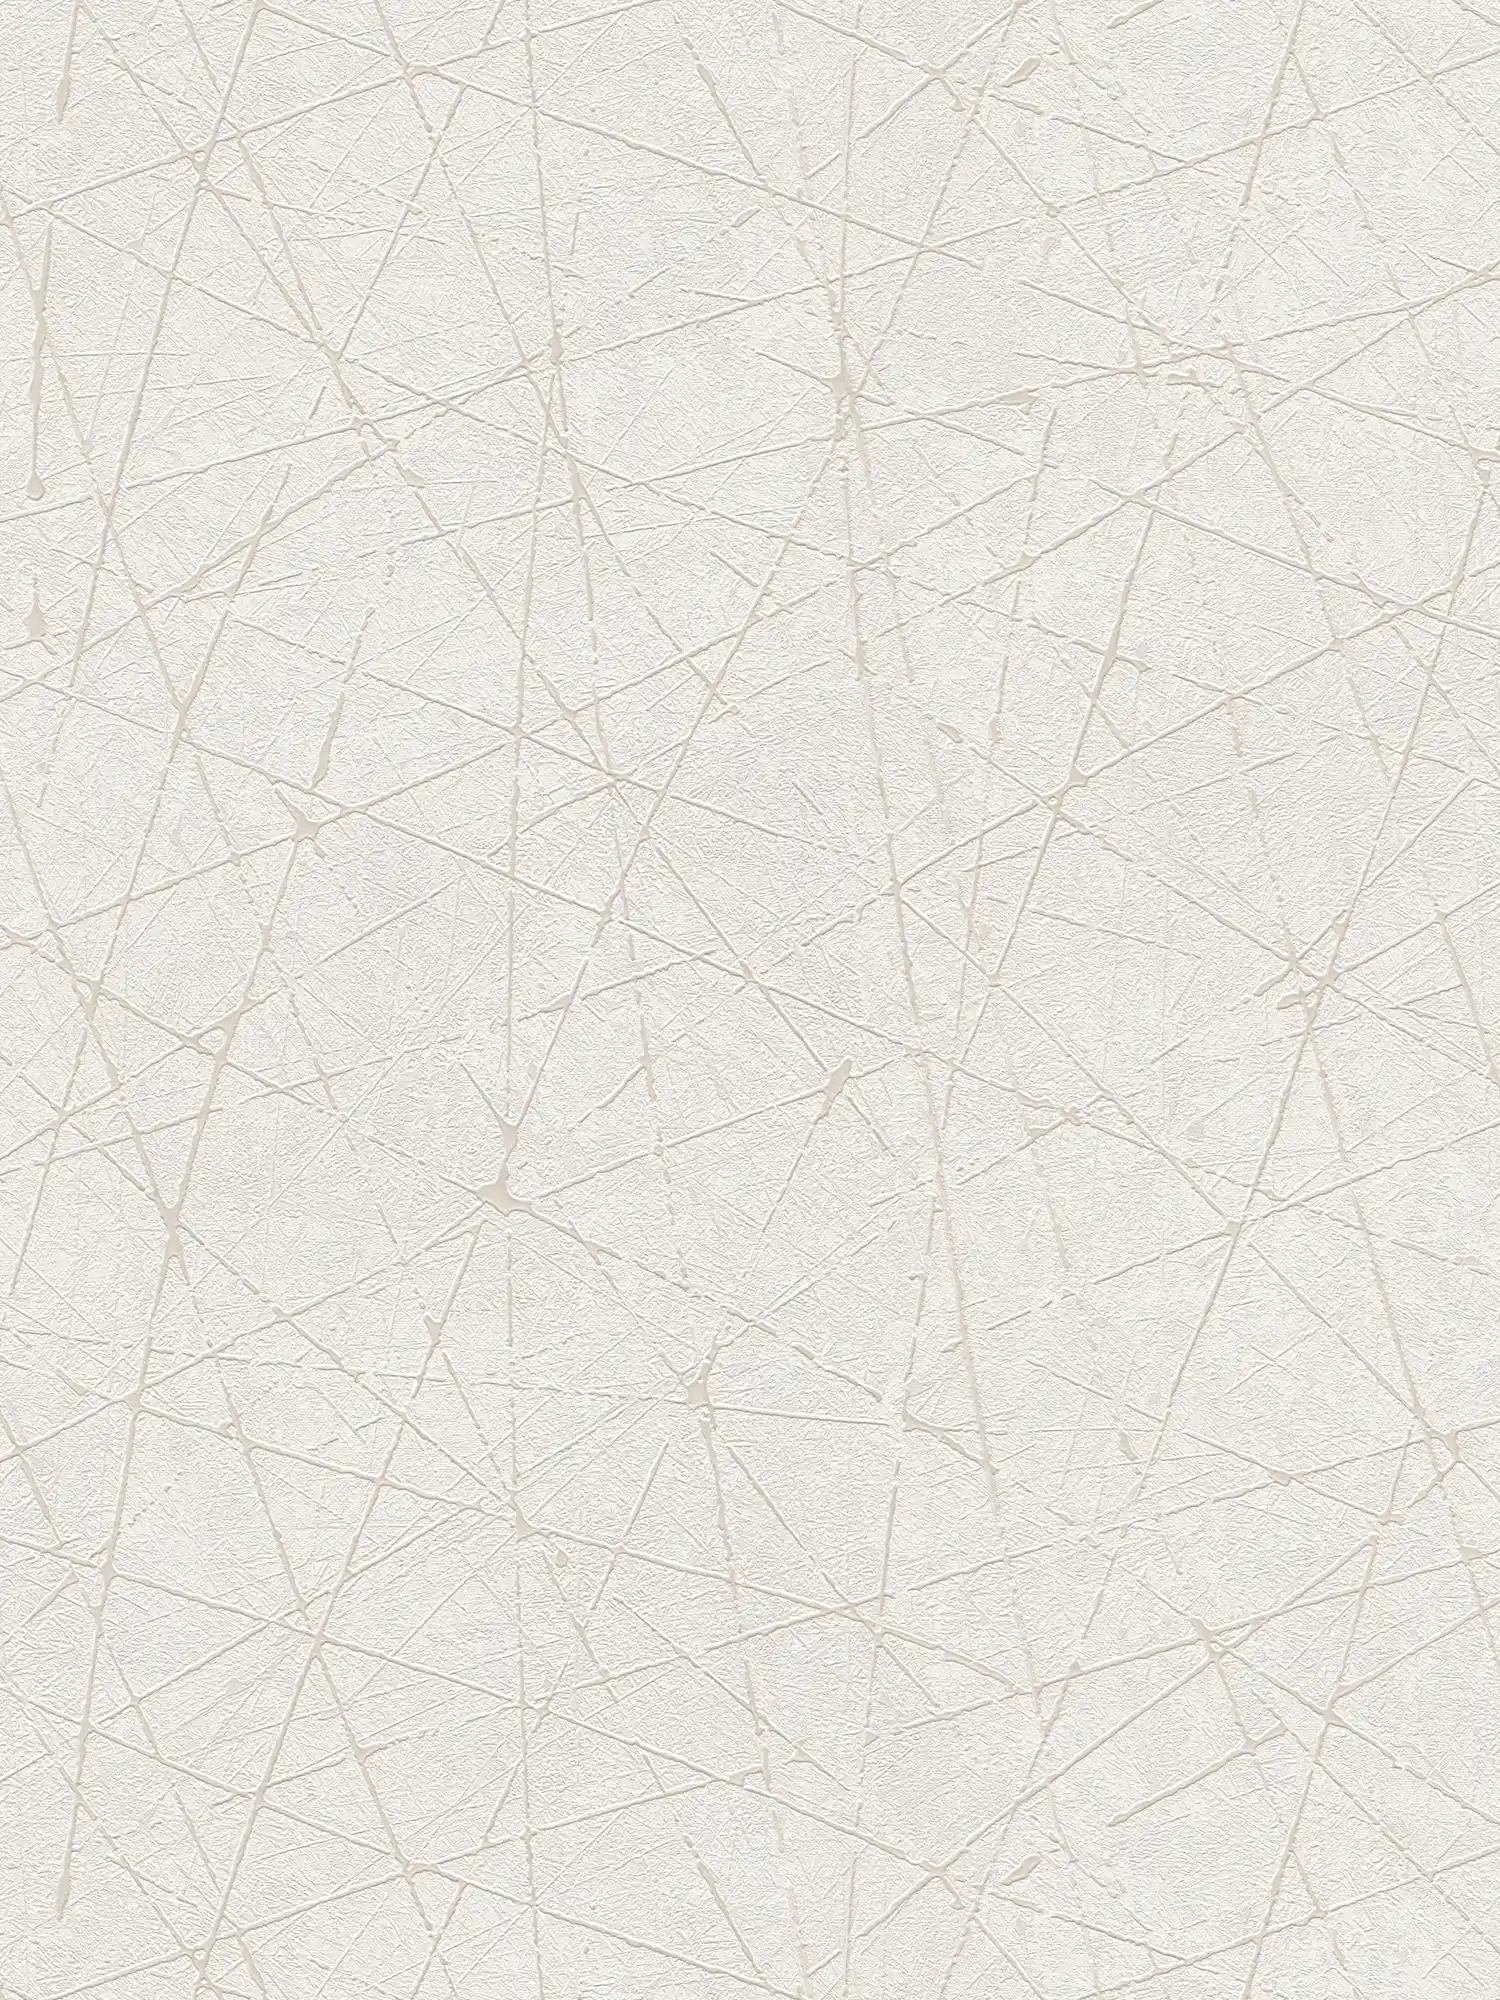         Carta da parati in tessuto non tessuto con motivo grafico a linee - bianco, crema, argento
    